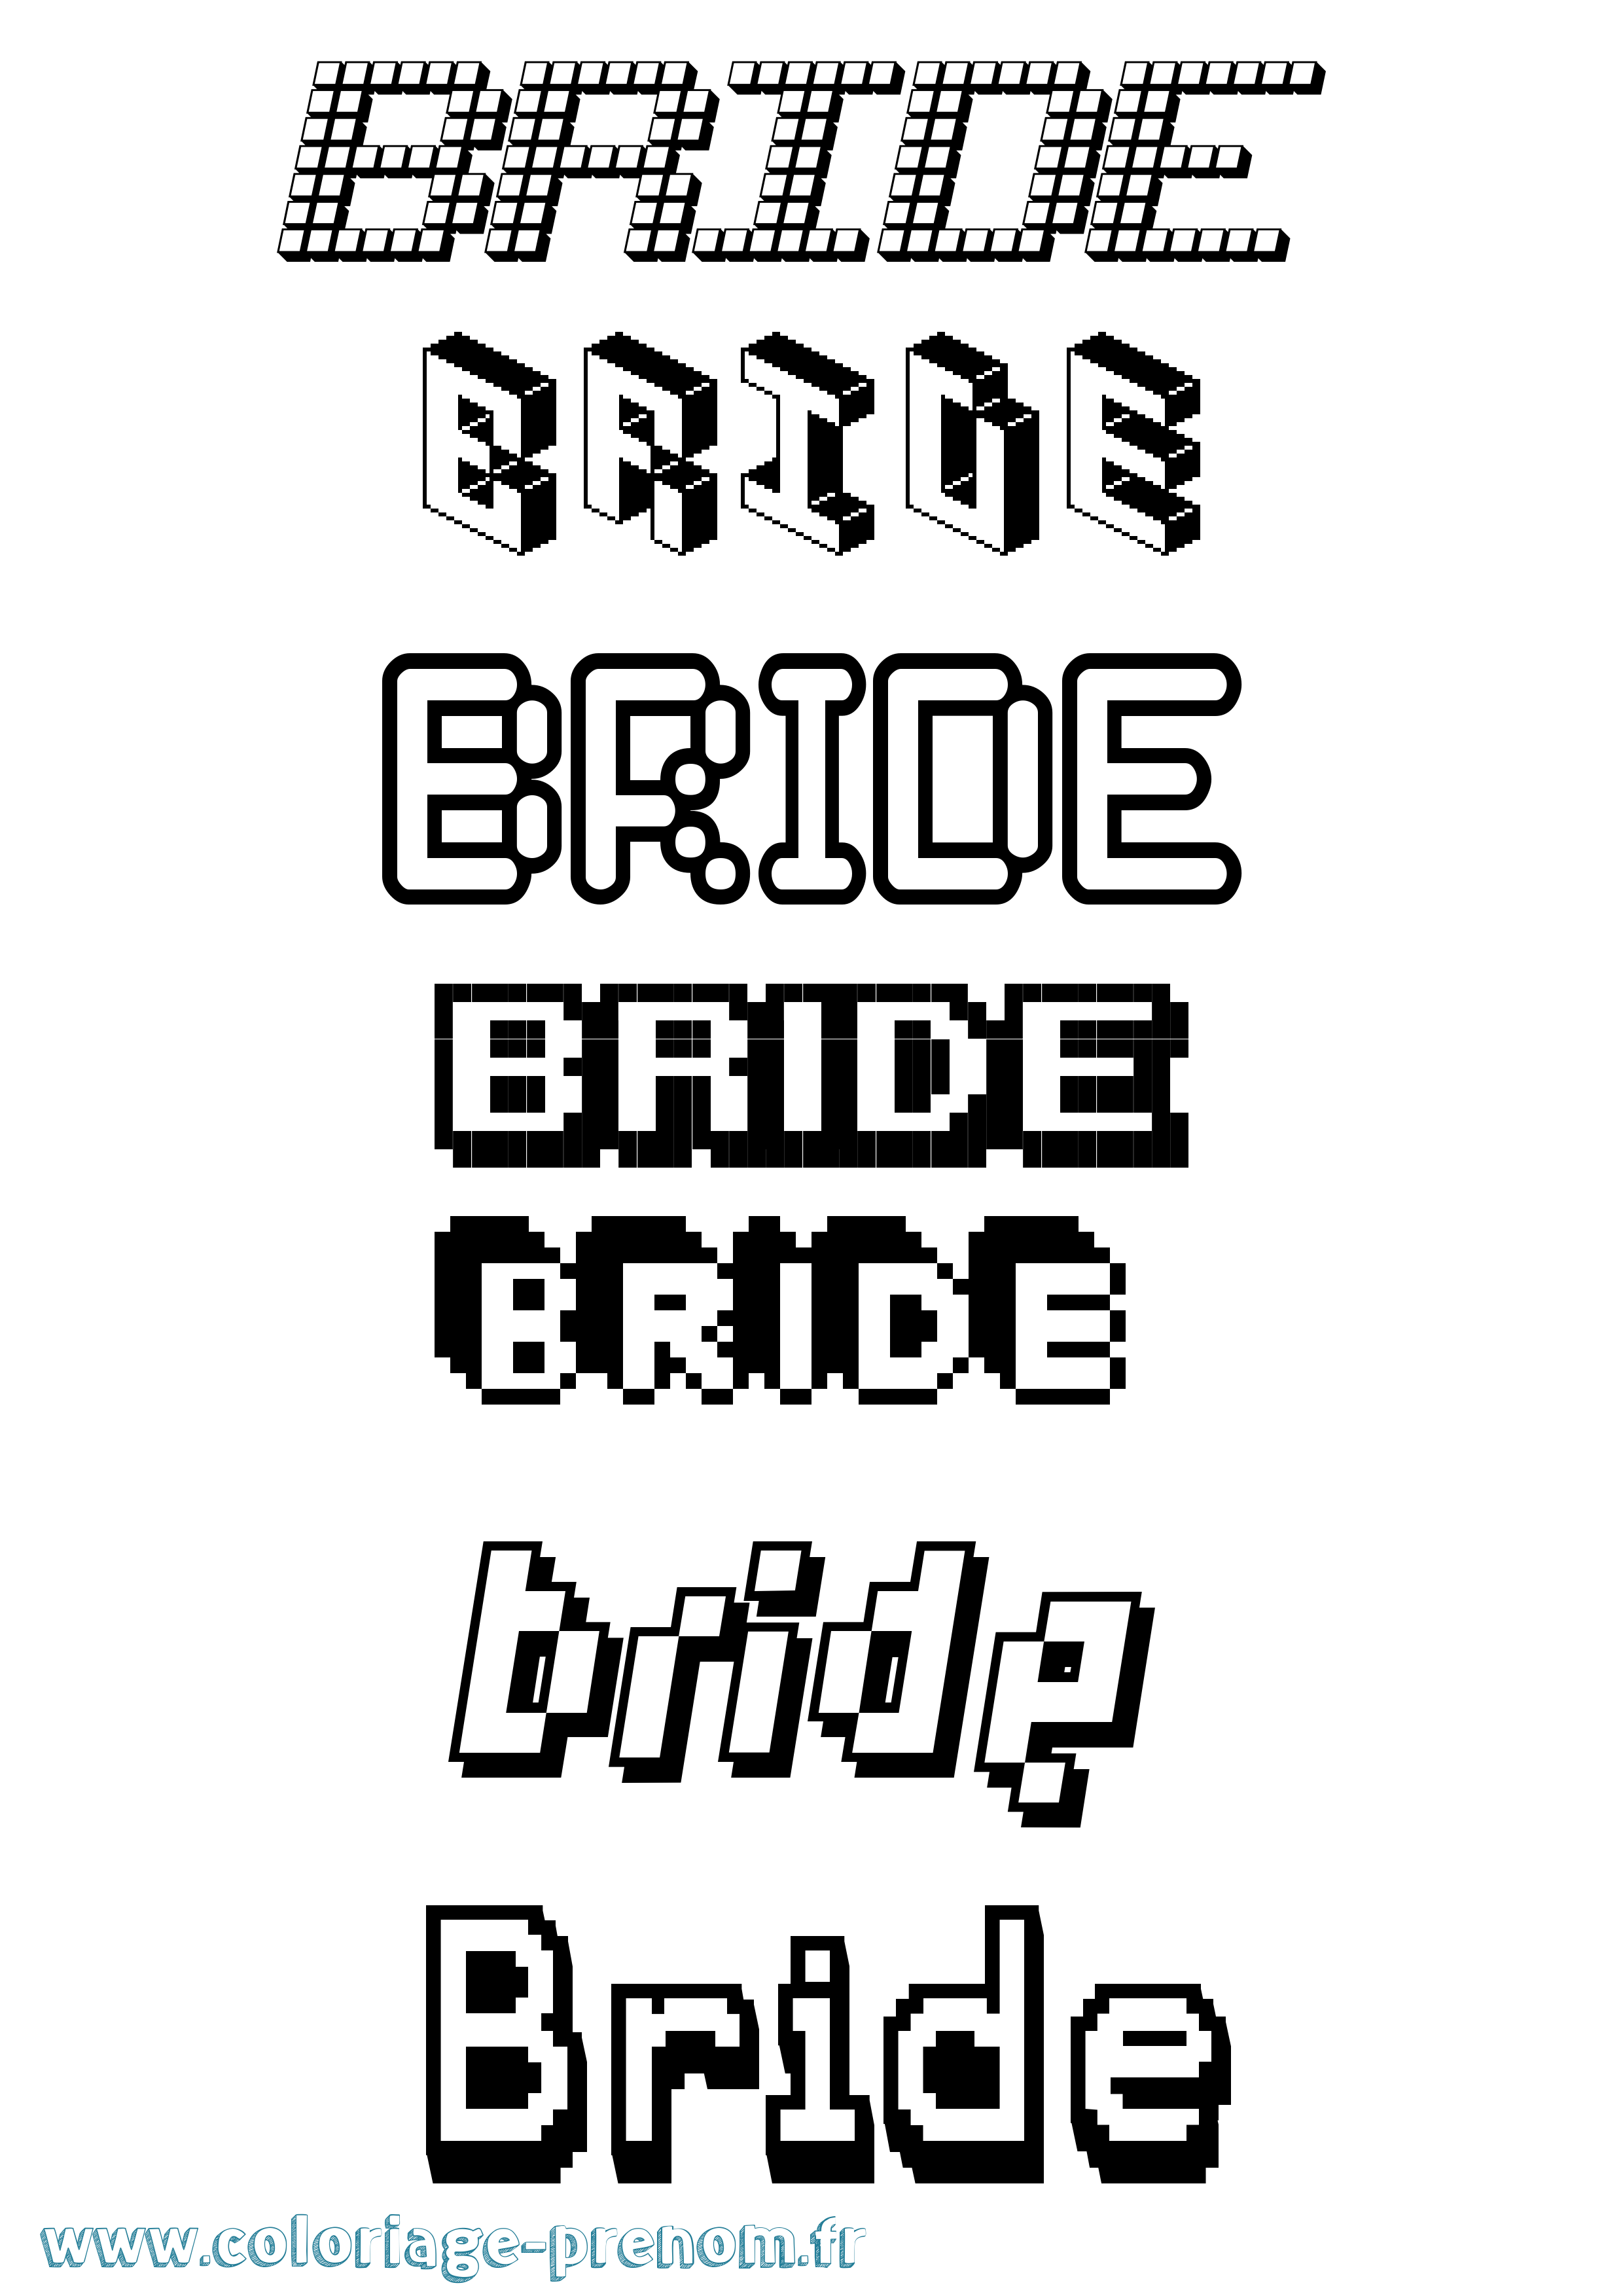 Coloriage prénom Bride Pixel